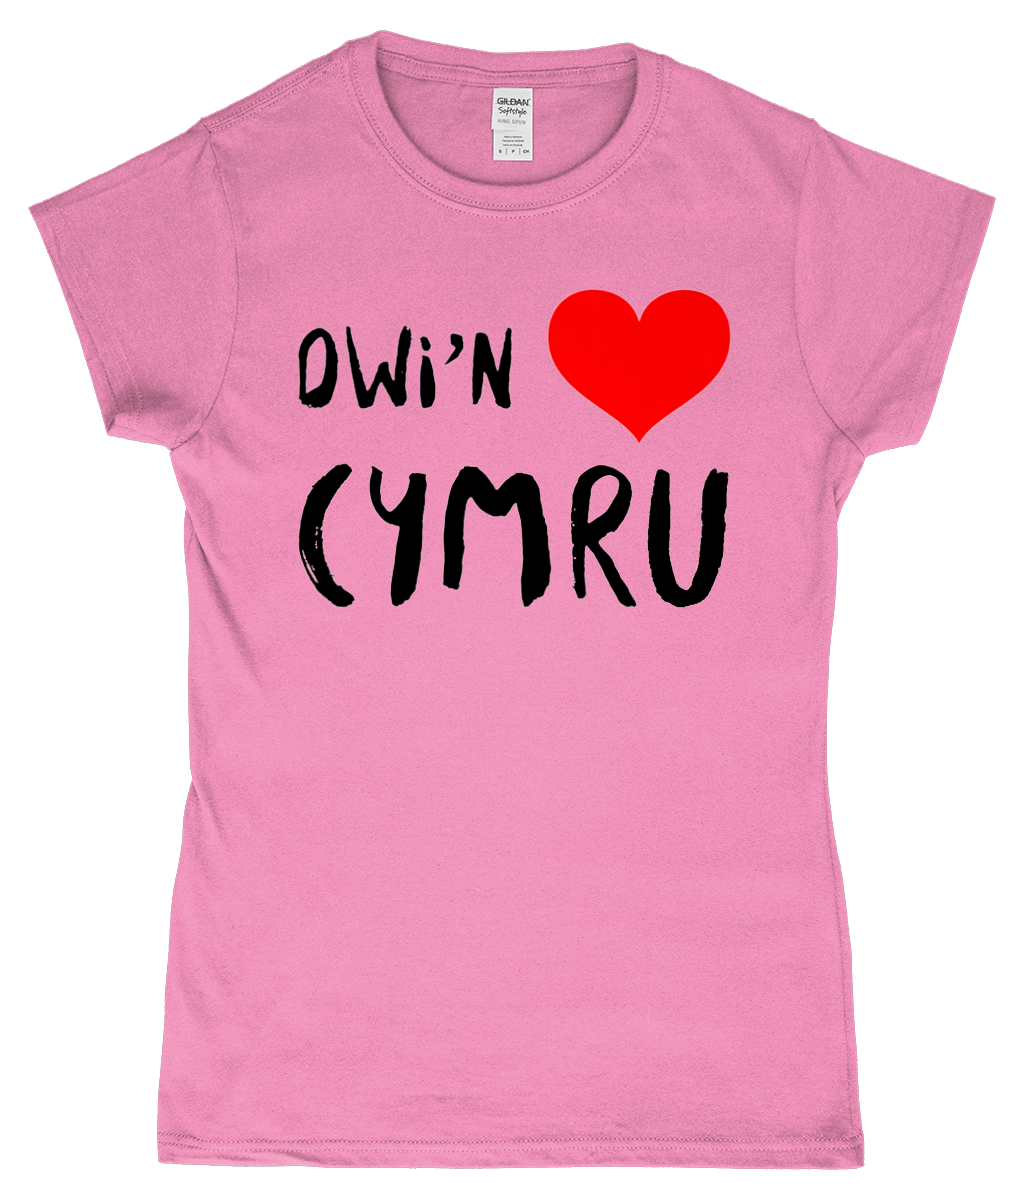 Dwi'n Caru Cymru - Crys-T 